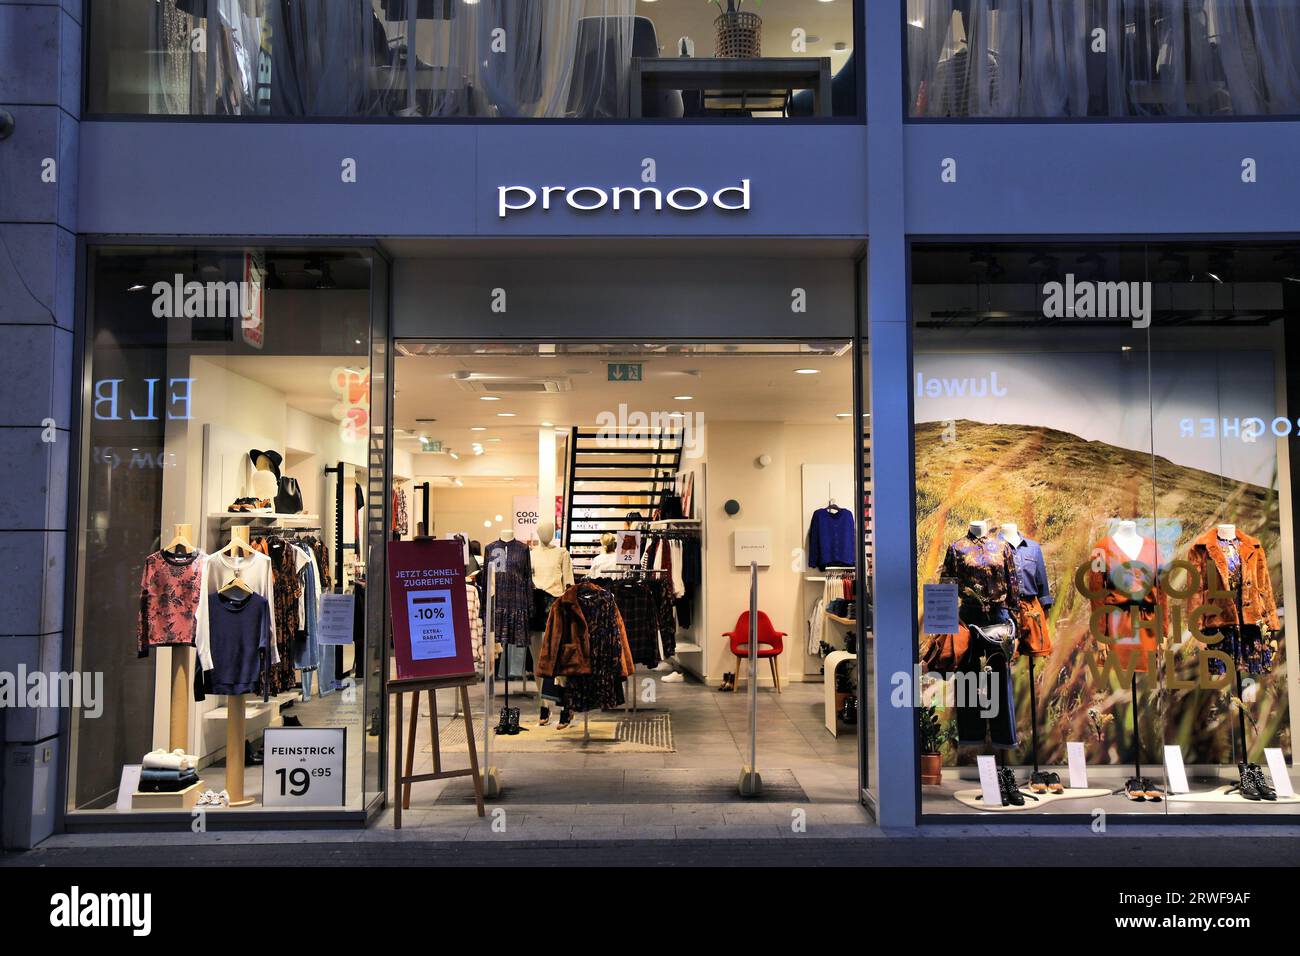 COLONIA, GERMANIA - 21 SETTEMBRE 2020: Negozio di abbigliamento Promod a Hohe Strasse (High Street) di Colonia, Germania. Hohe Strasse è uno dei negozi più frequentati Foto Stock